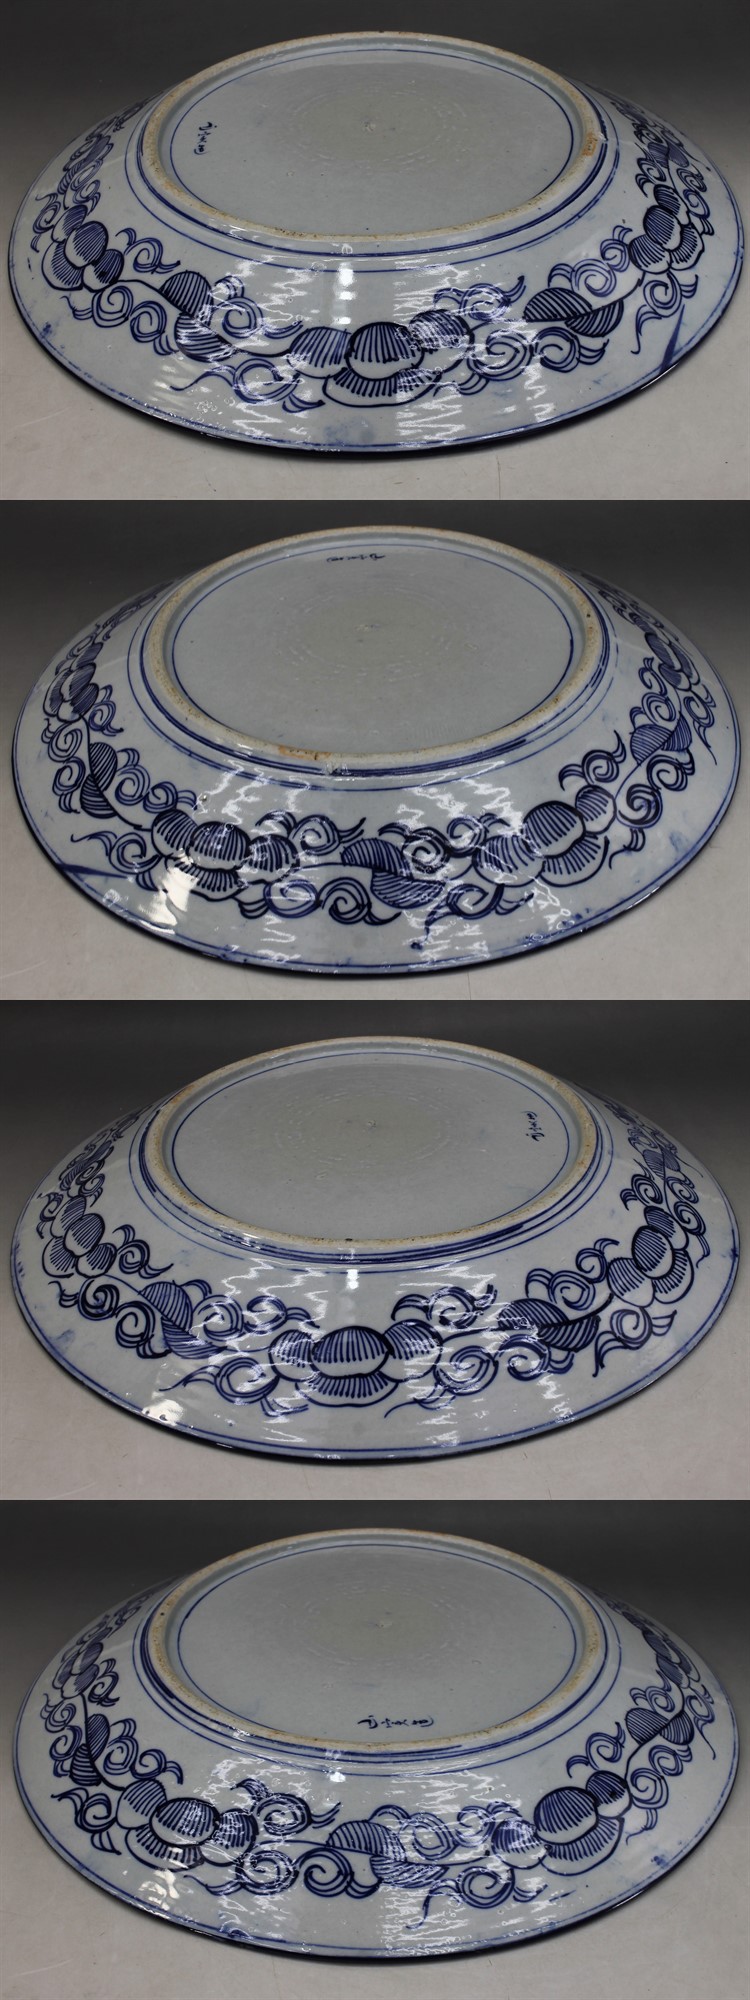 F156 大皿 染付 ベロ藍 花紋 径41㎝ 一尺3寸 皿 明治 大正 昭和 有田 伊万里 蔵出 古玩 珍宝 古董